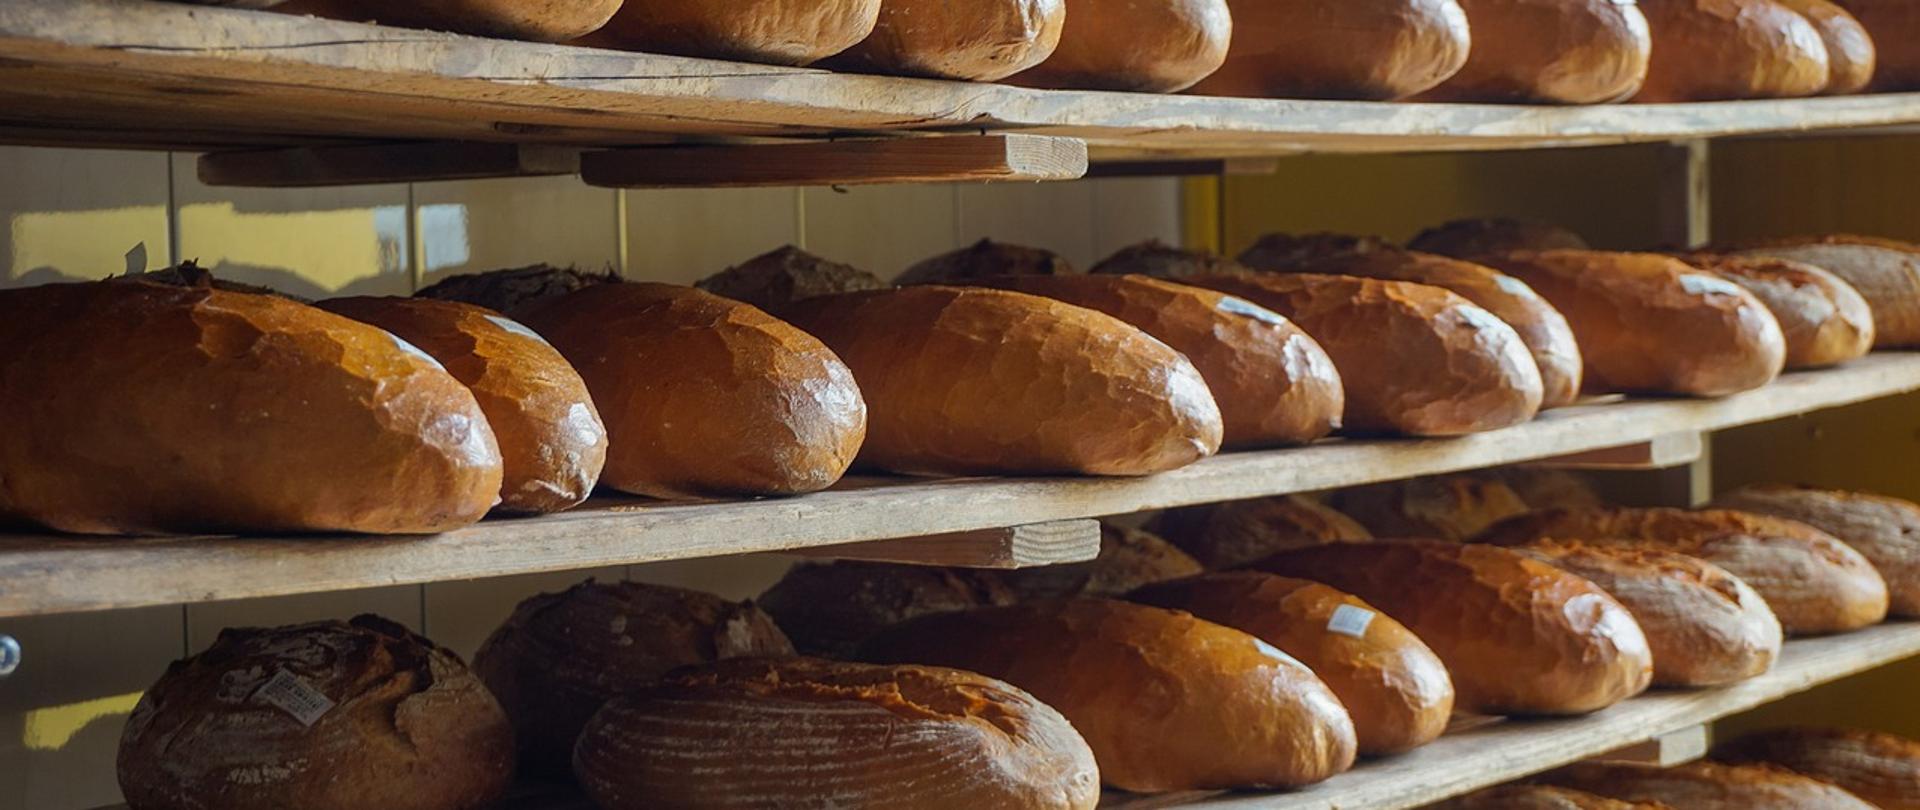 Pieczywo (chleb) poukładany na półkach w piekarni.